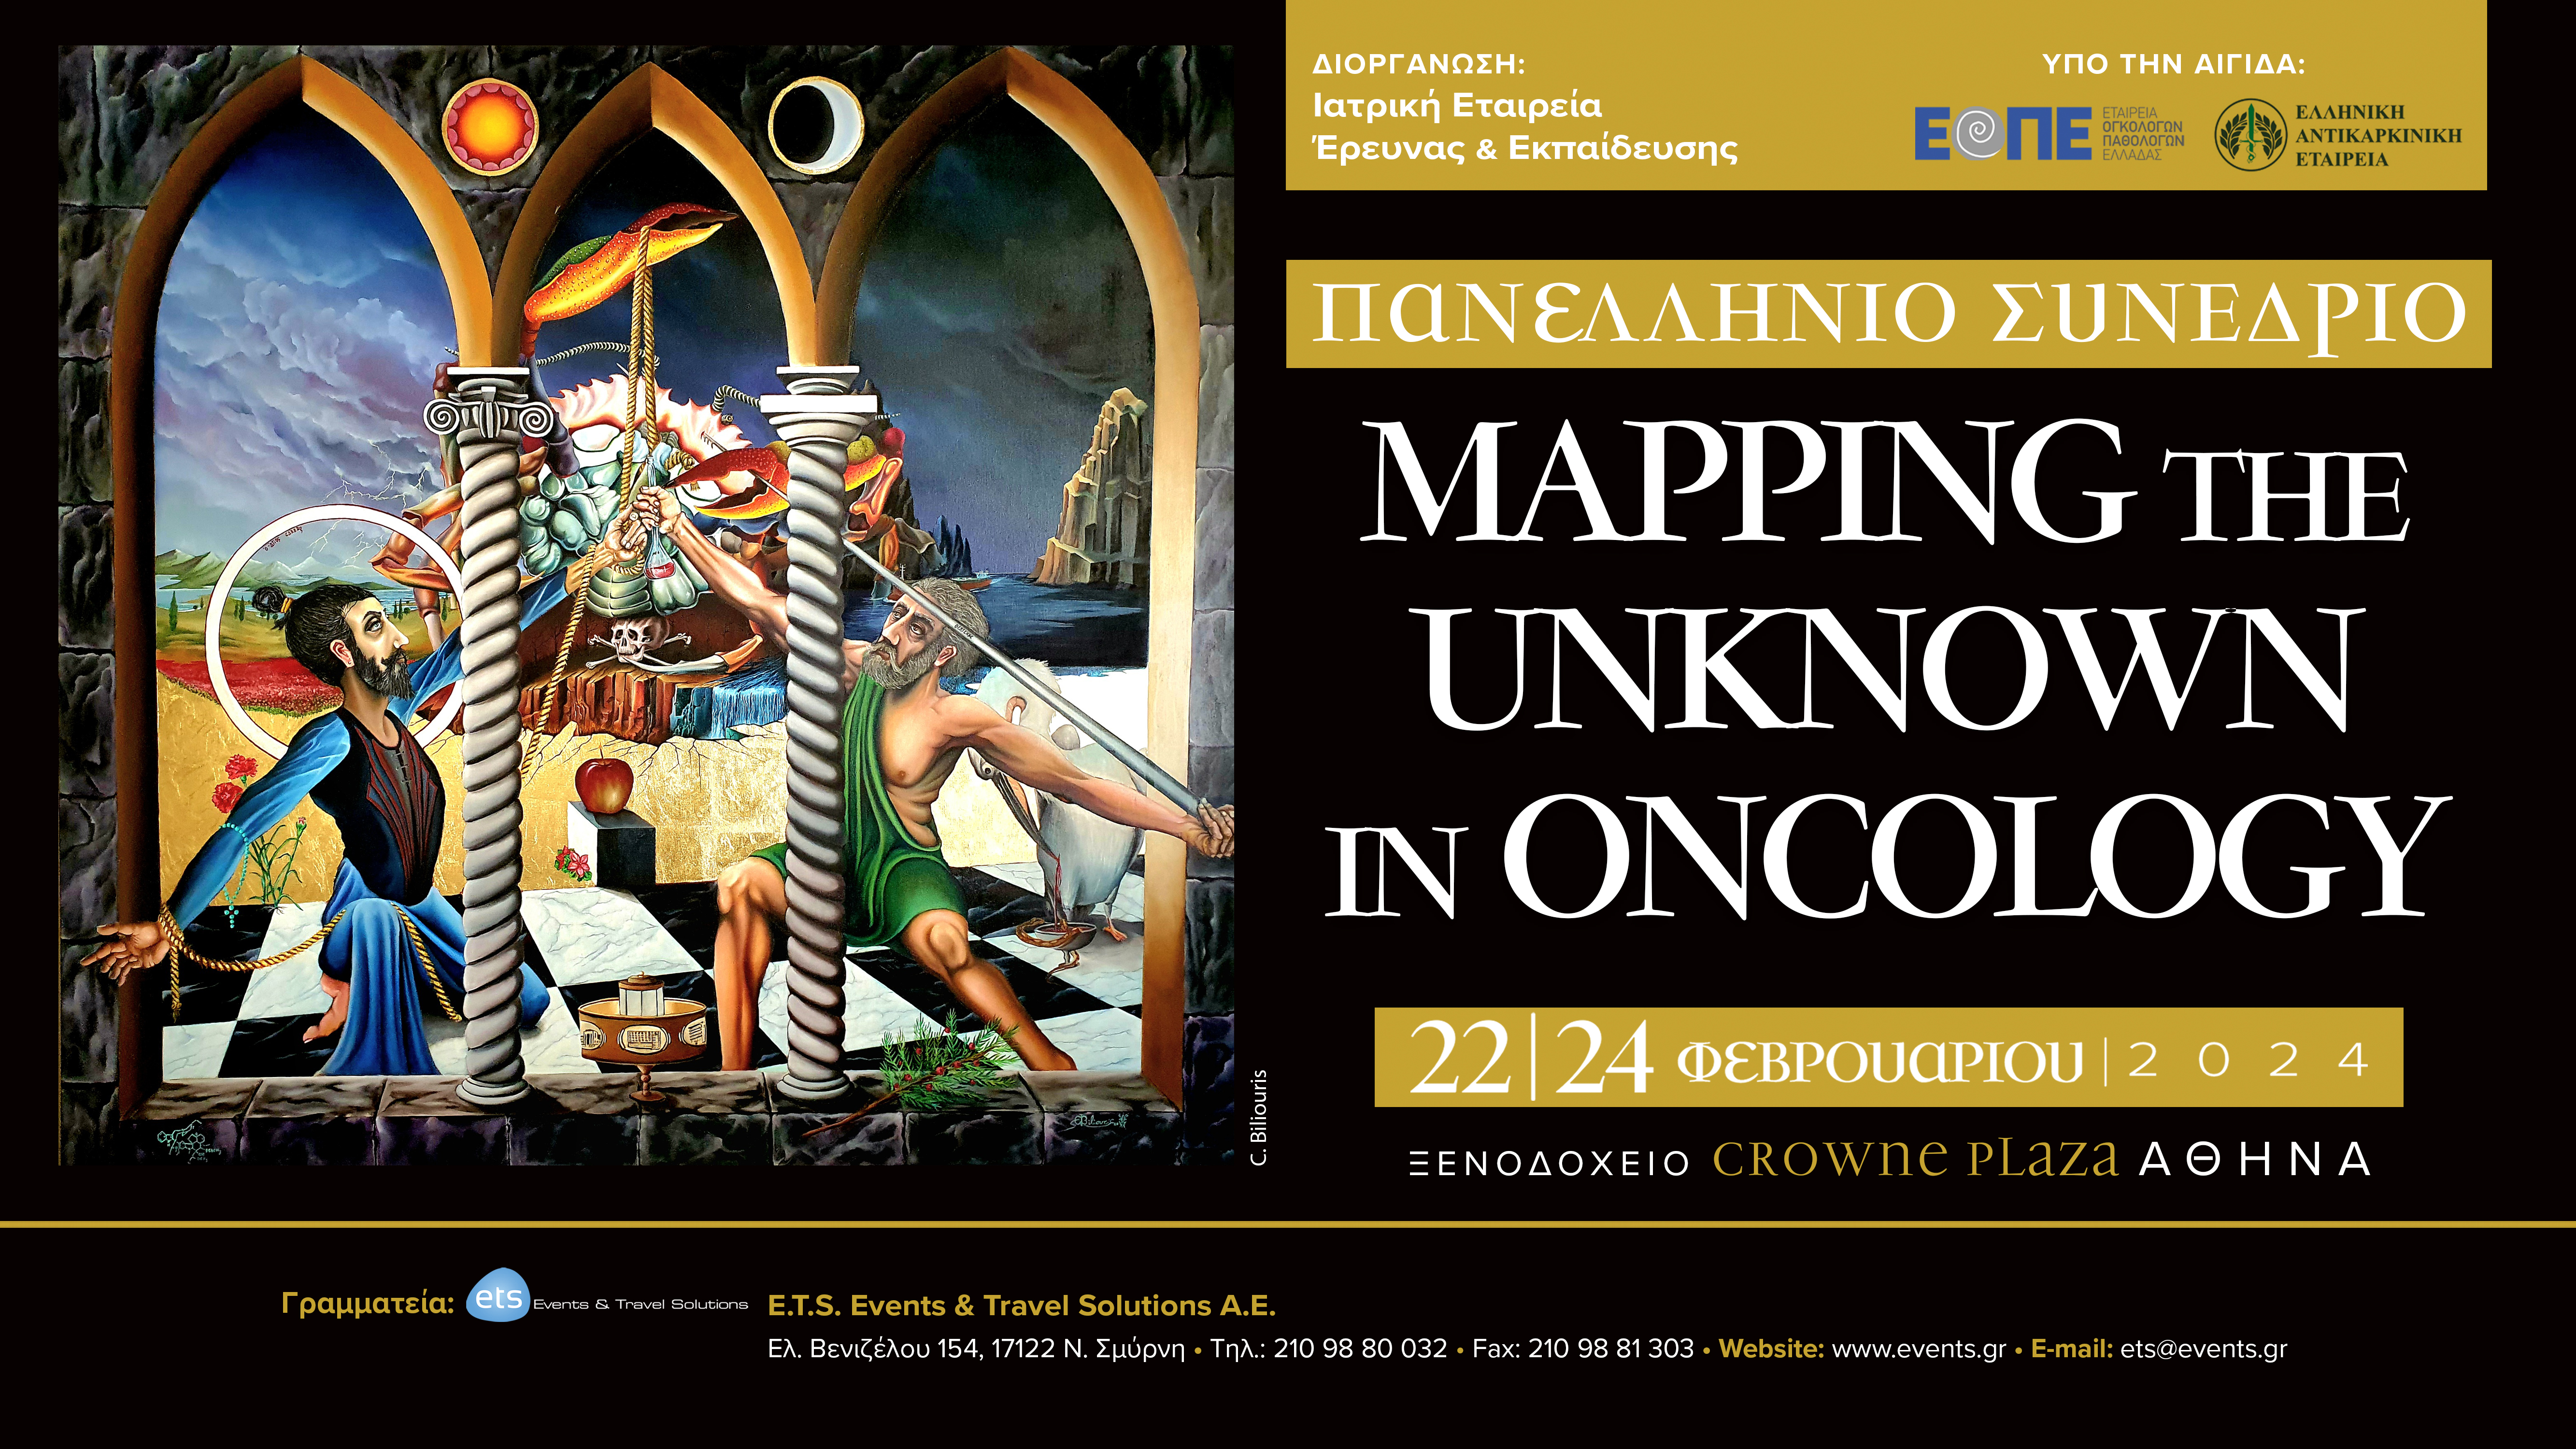 Πανελλήνιο Συνέδριο "Mapping the Unknown in Oncology"